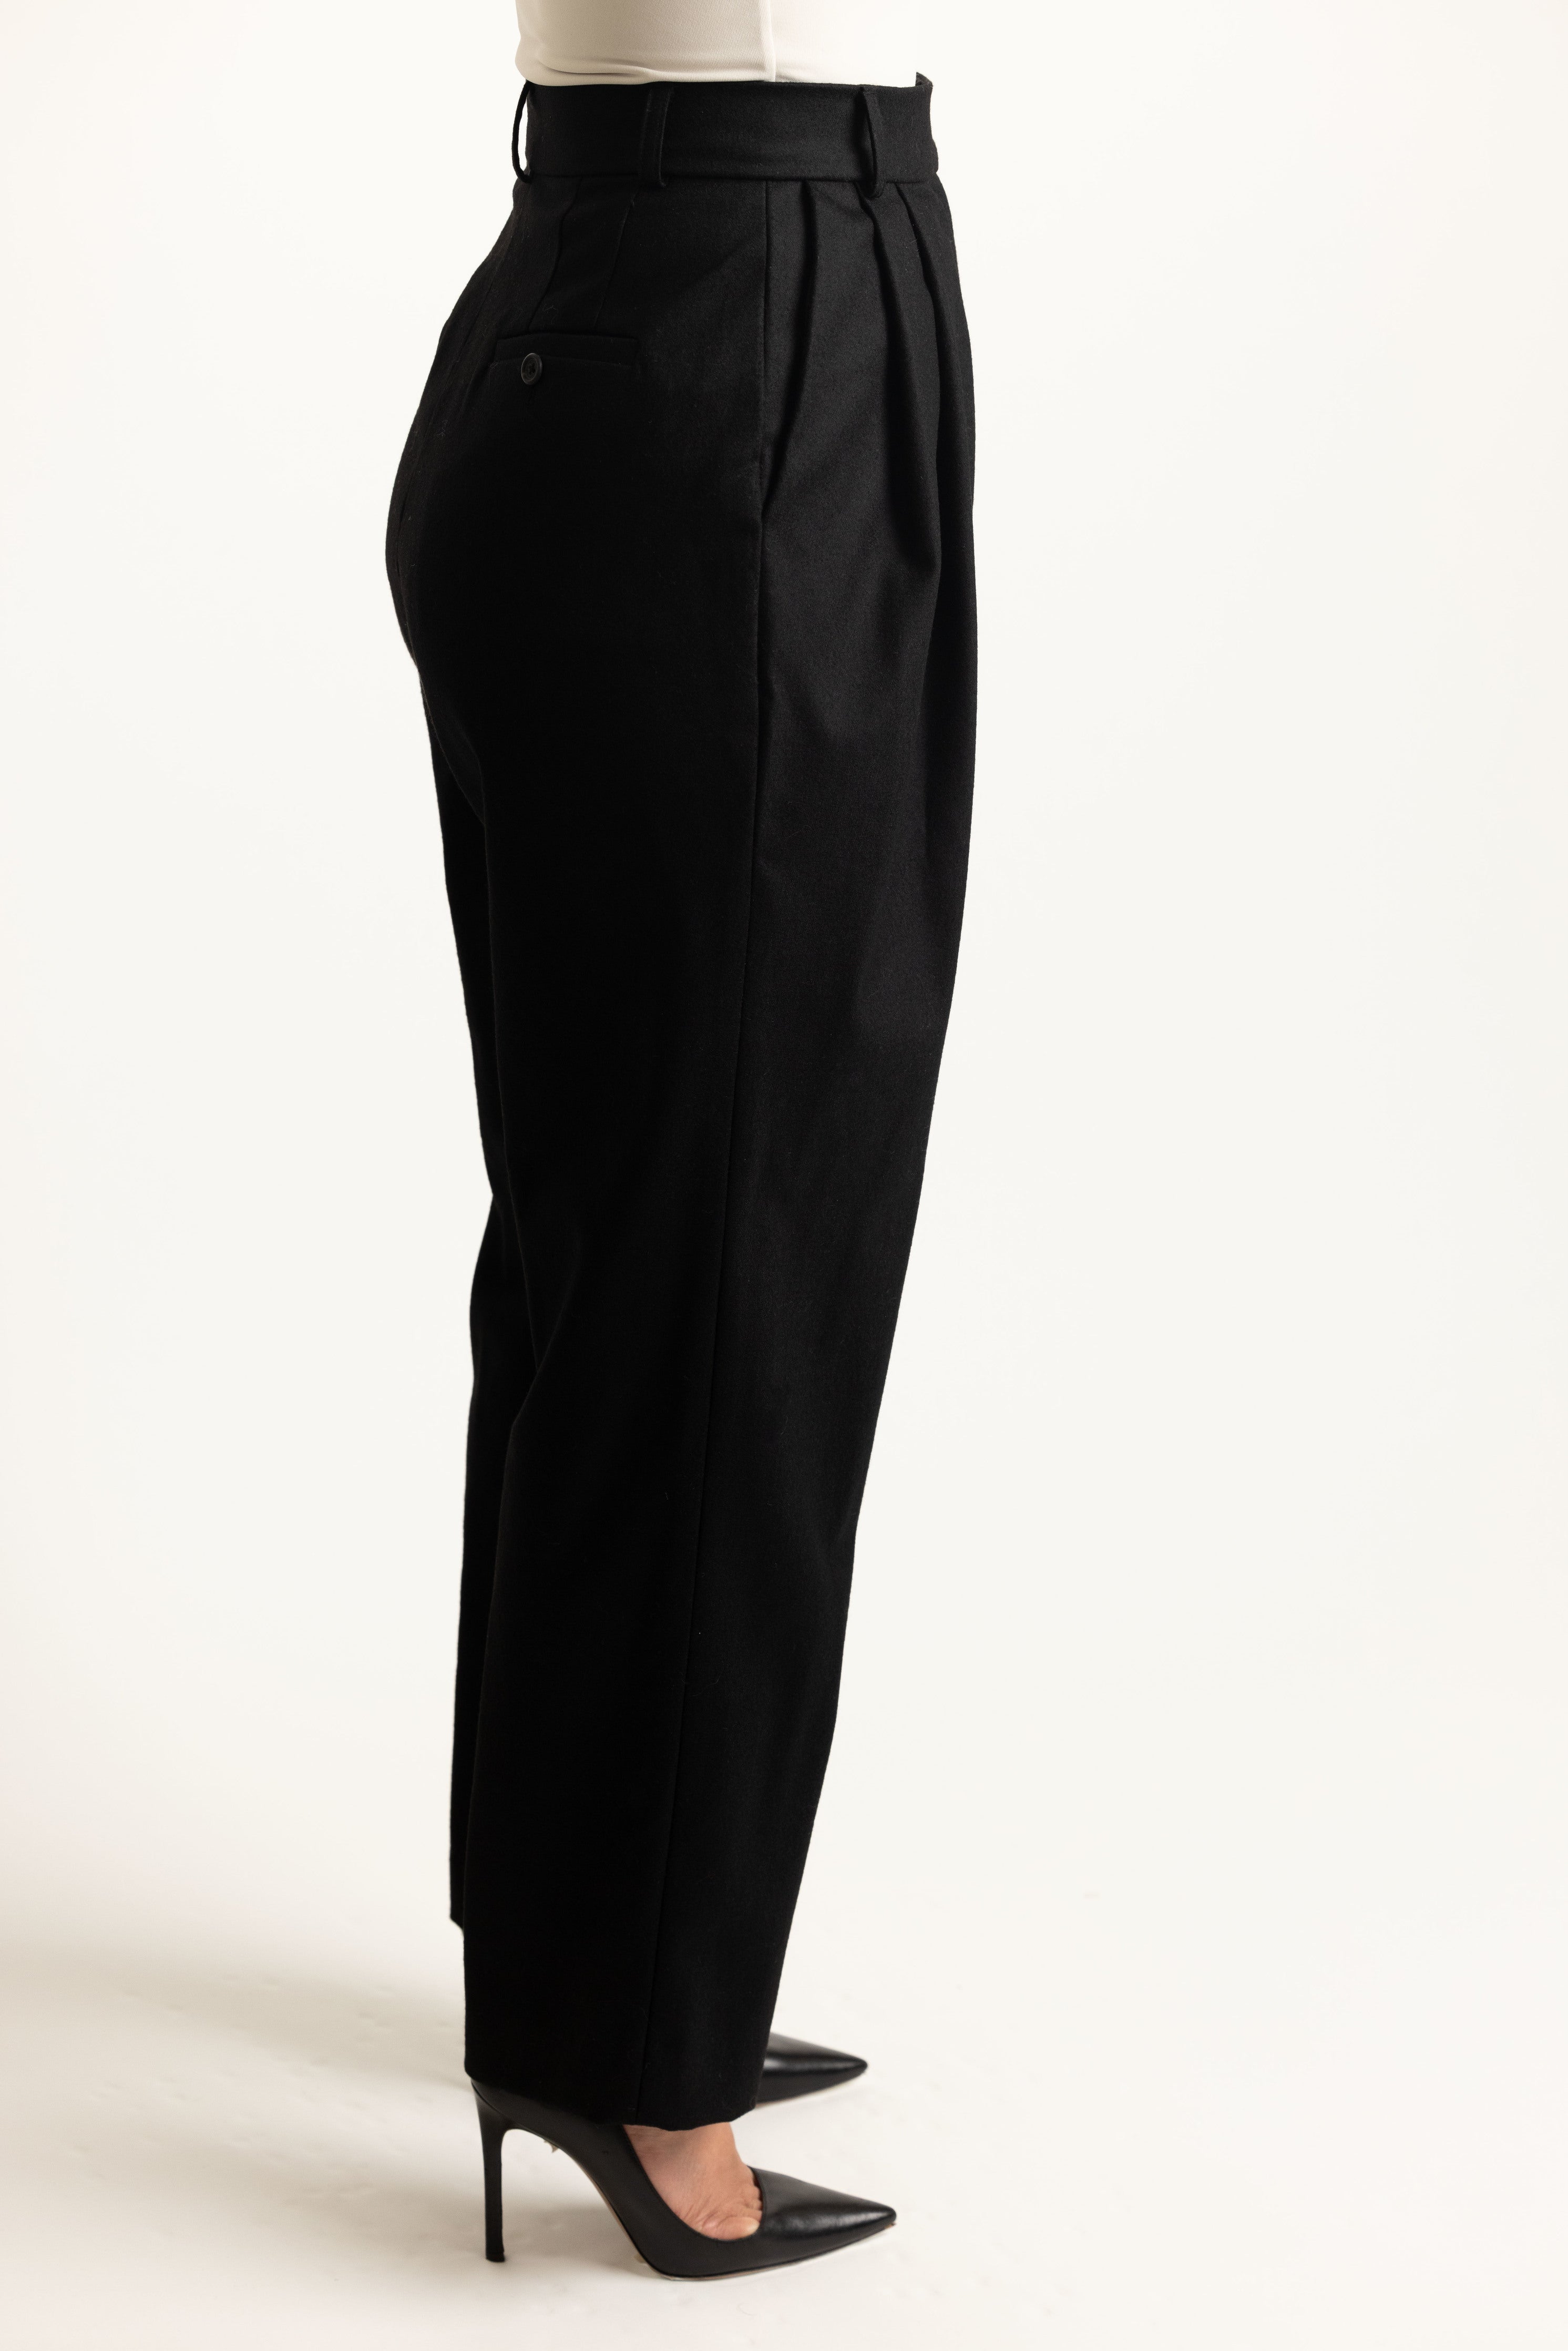 Trial Trouser in Black - side details of pleats 